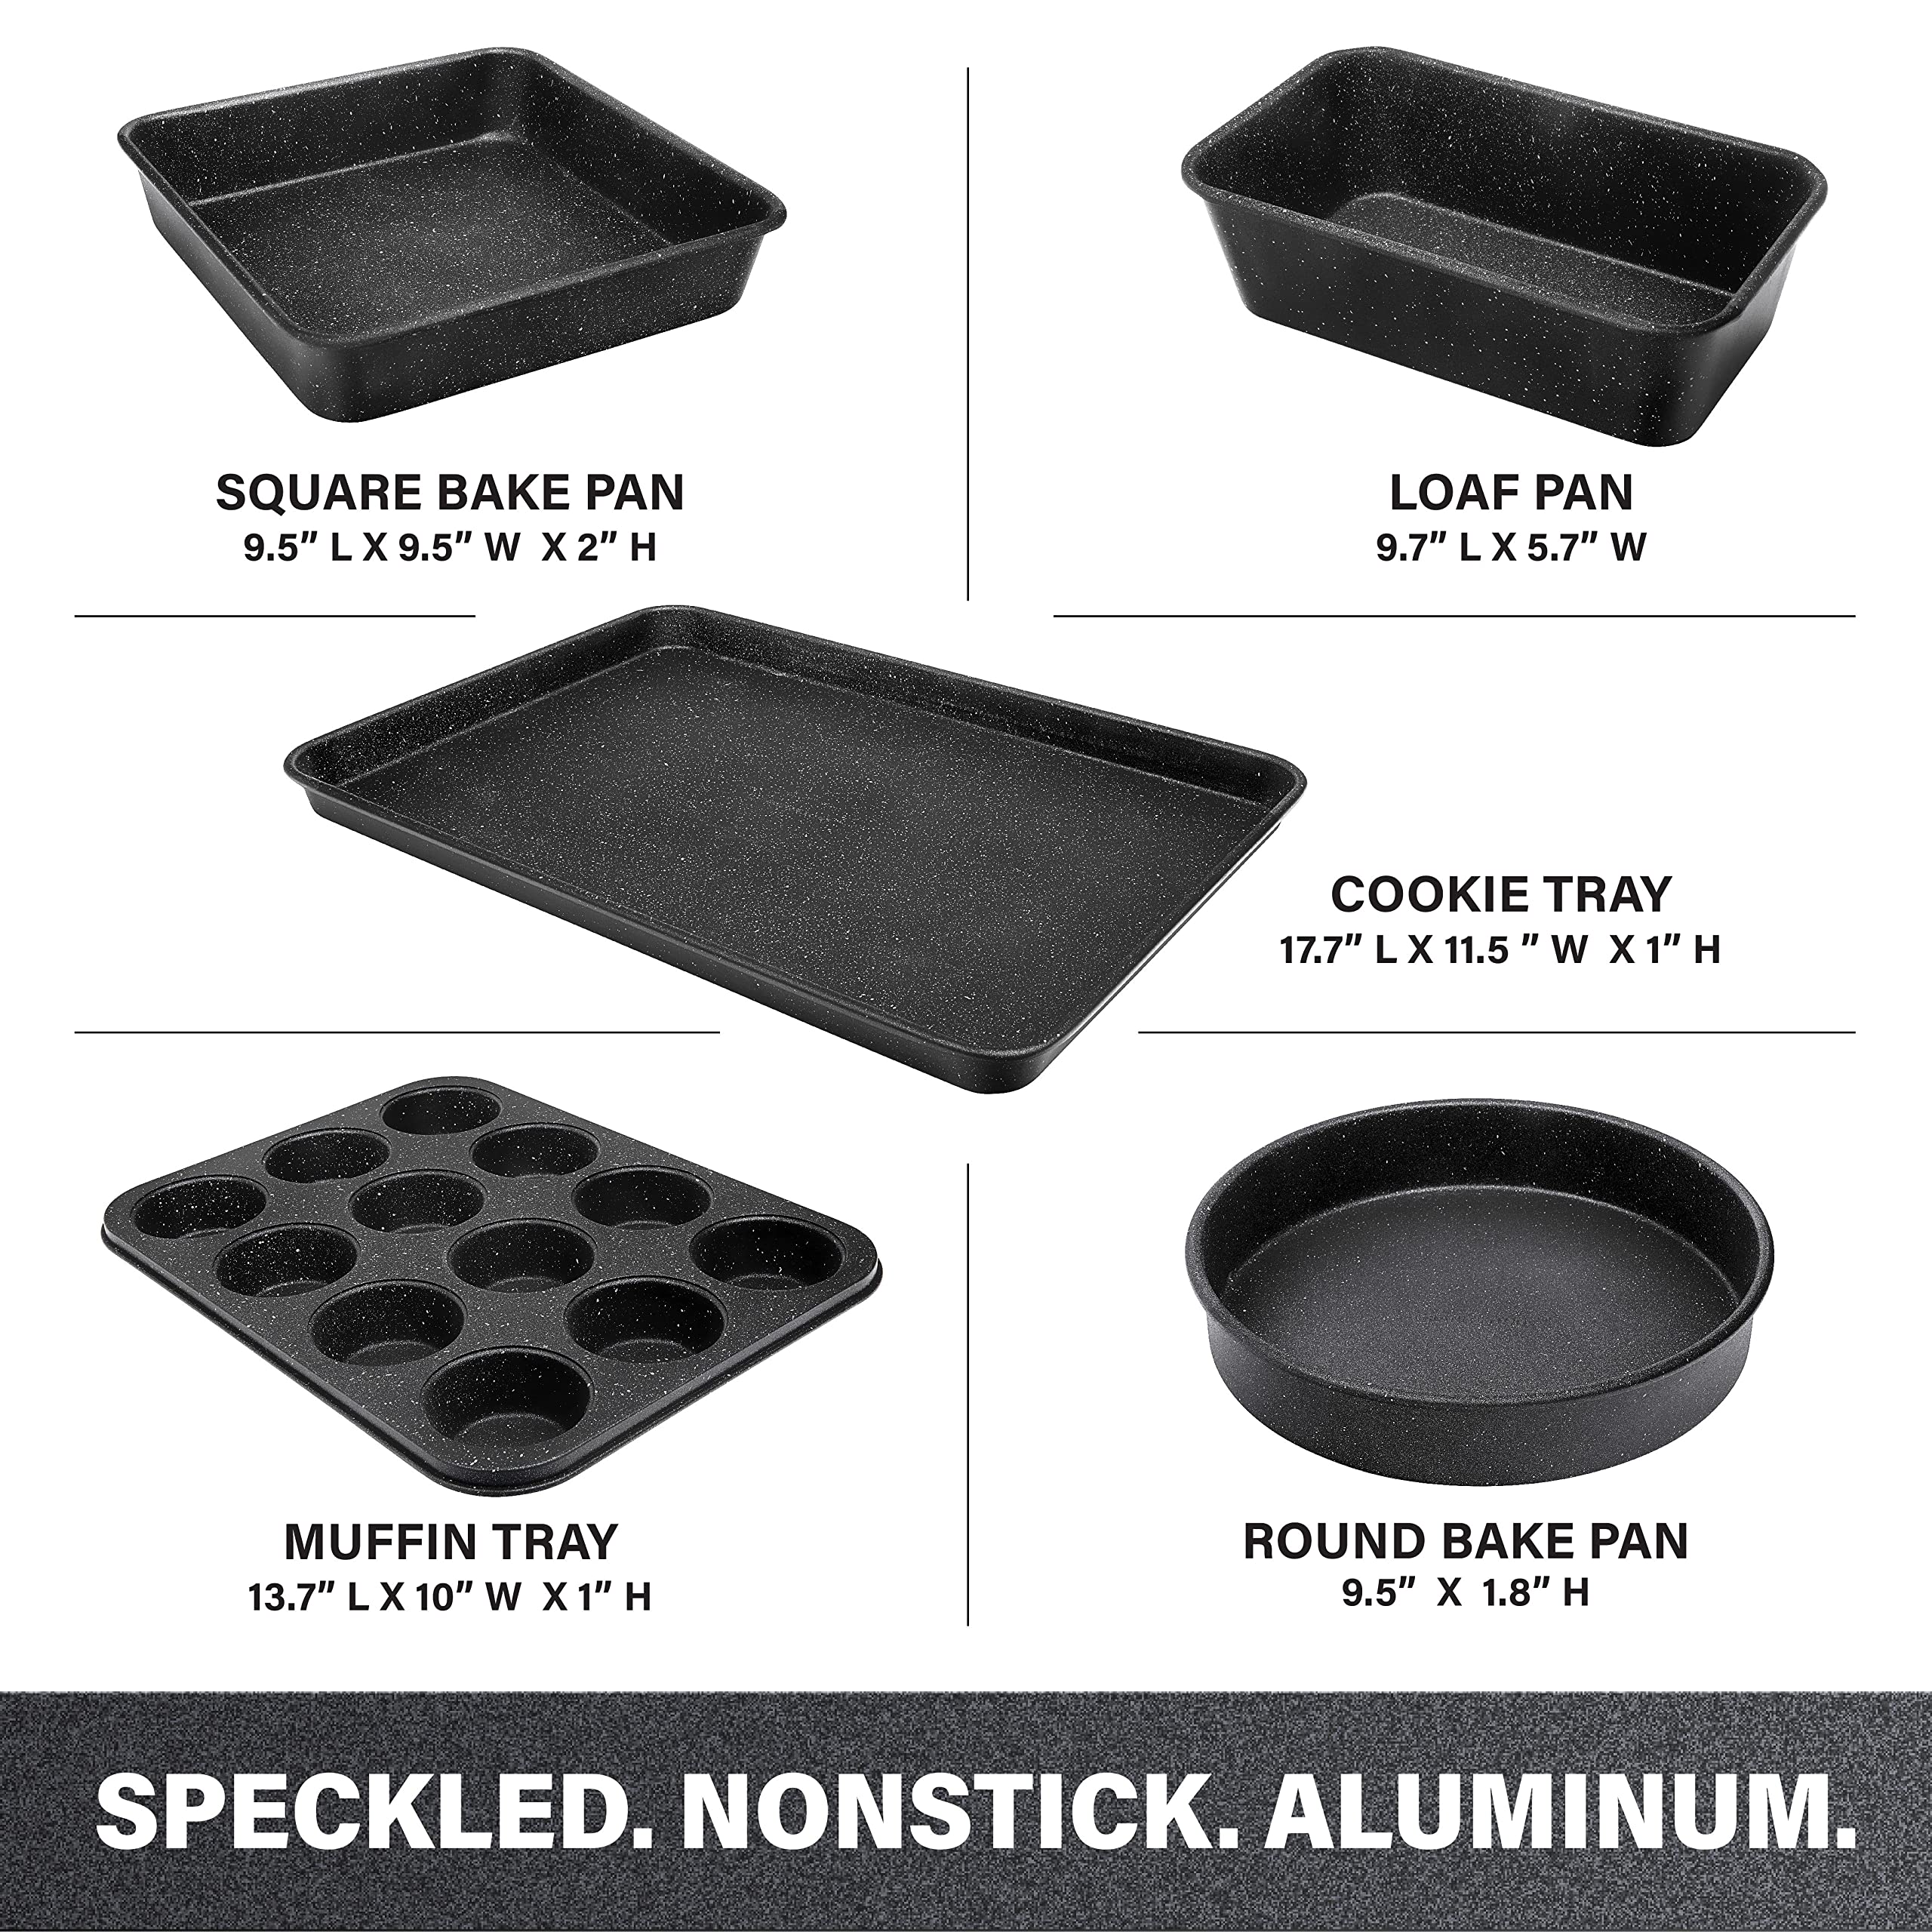 Granitestone Black Nonstick Bakeware Set, 5 Piece Baking Pans Set, Dishwasher Safe Baking Set, No Warp & Even Heating Oven Pan Set with Square & Round Baking Pan Muffin Pan, Loaf Pan & Baking Sheet